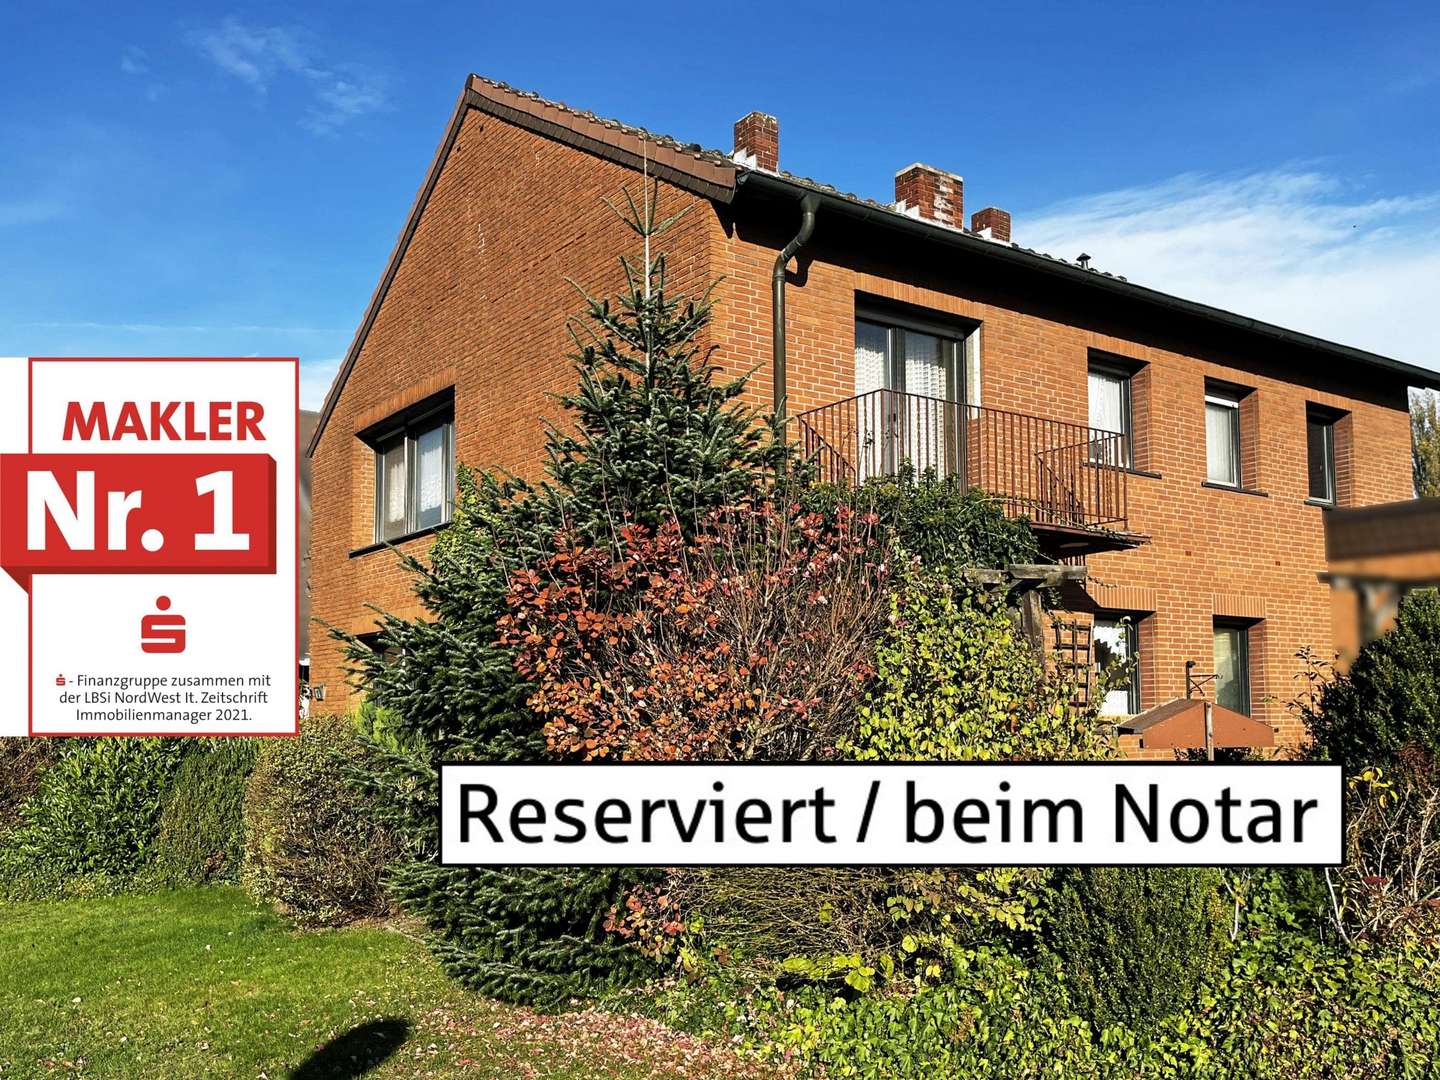 Reserviert / beim Notar - Zweifamilienhaus in 59067 Hamm mit 159m² günstig kaufen